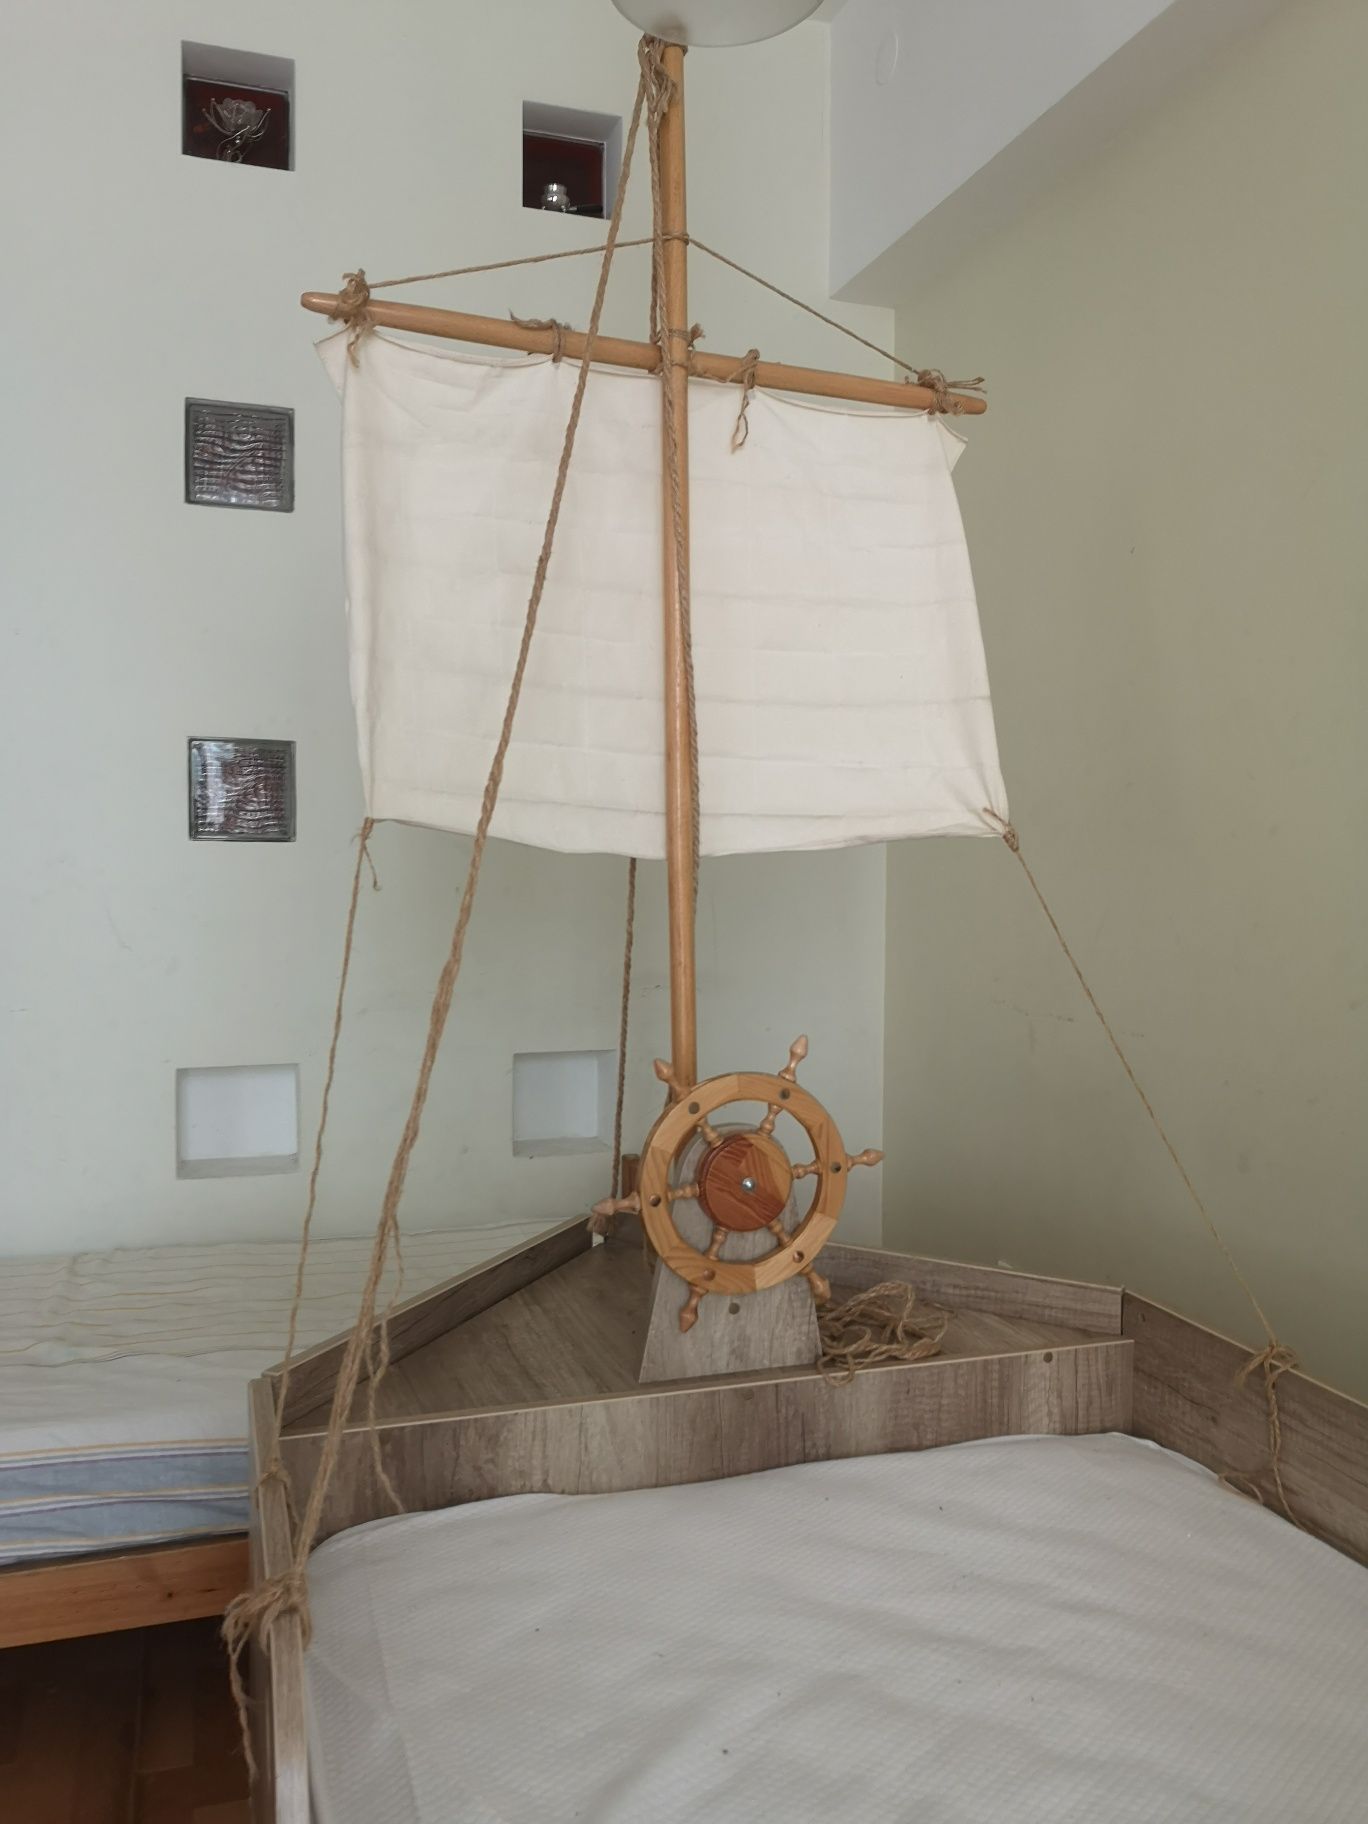 Ліжко-корабель зі щоглами, вітрилами, з кормою, з носом, з трюмом